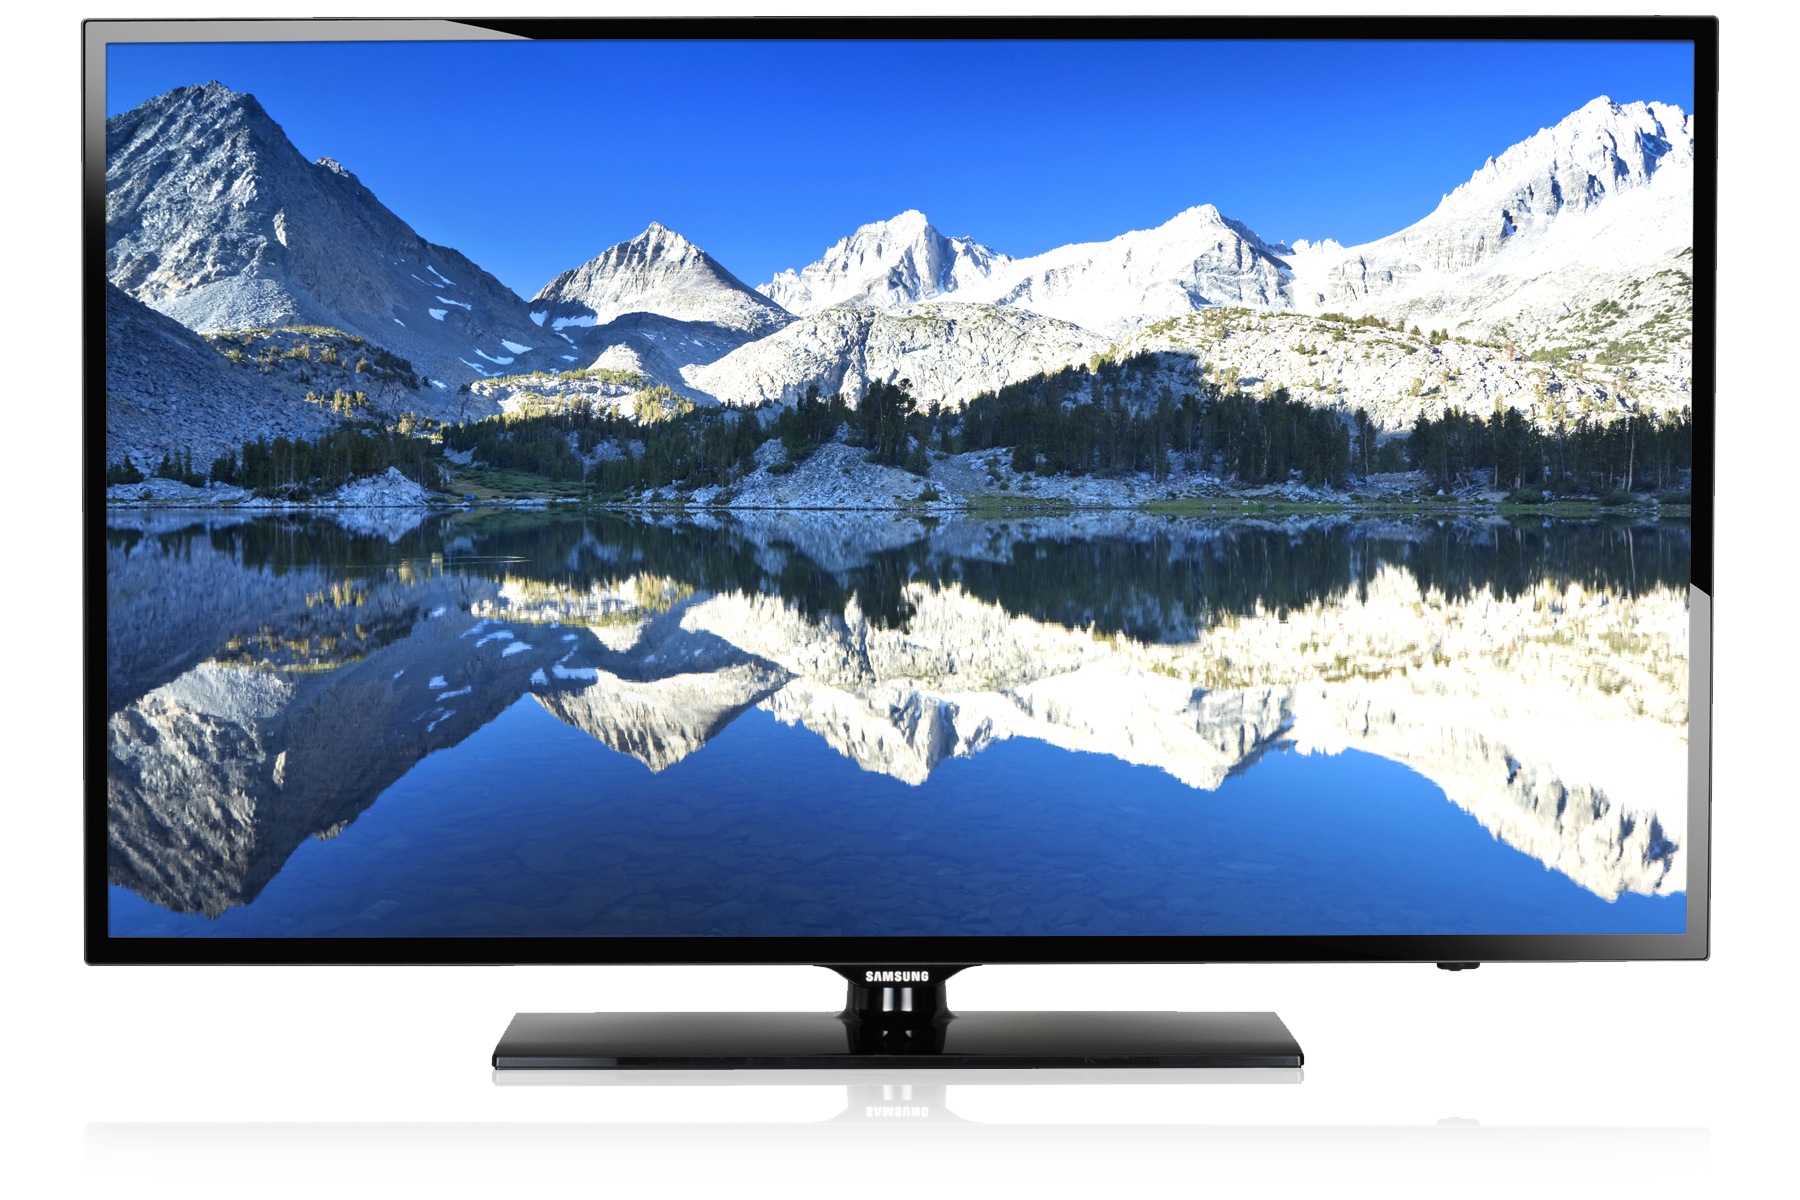 Bevægelse magi forfølgelse 2012] UA46EH6000R 46-Inch Full HD LED TV | Samsung Support Gulf